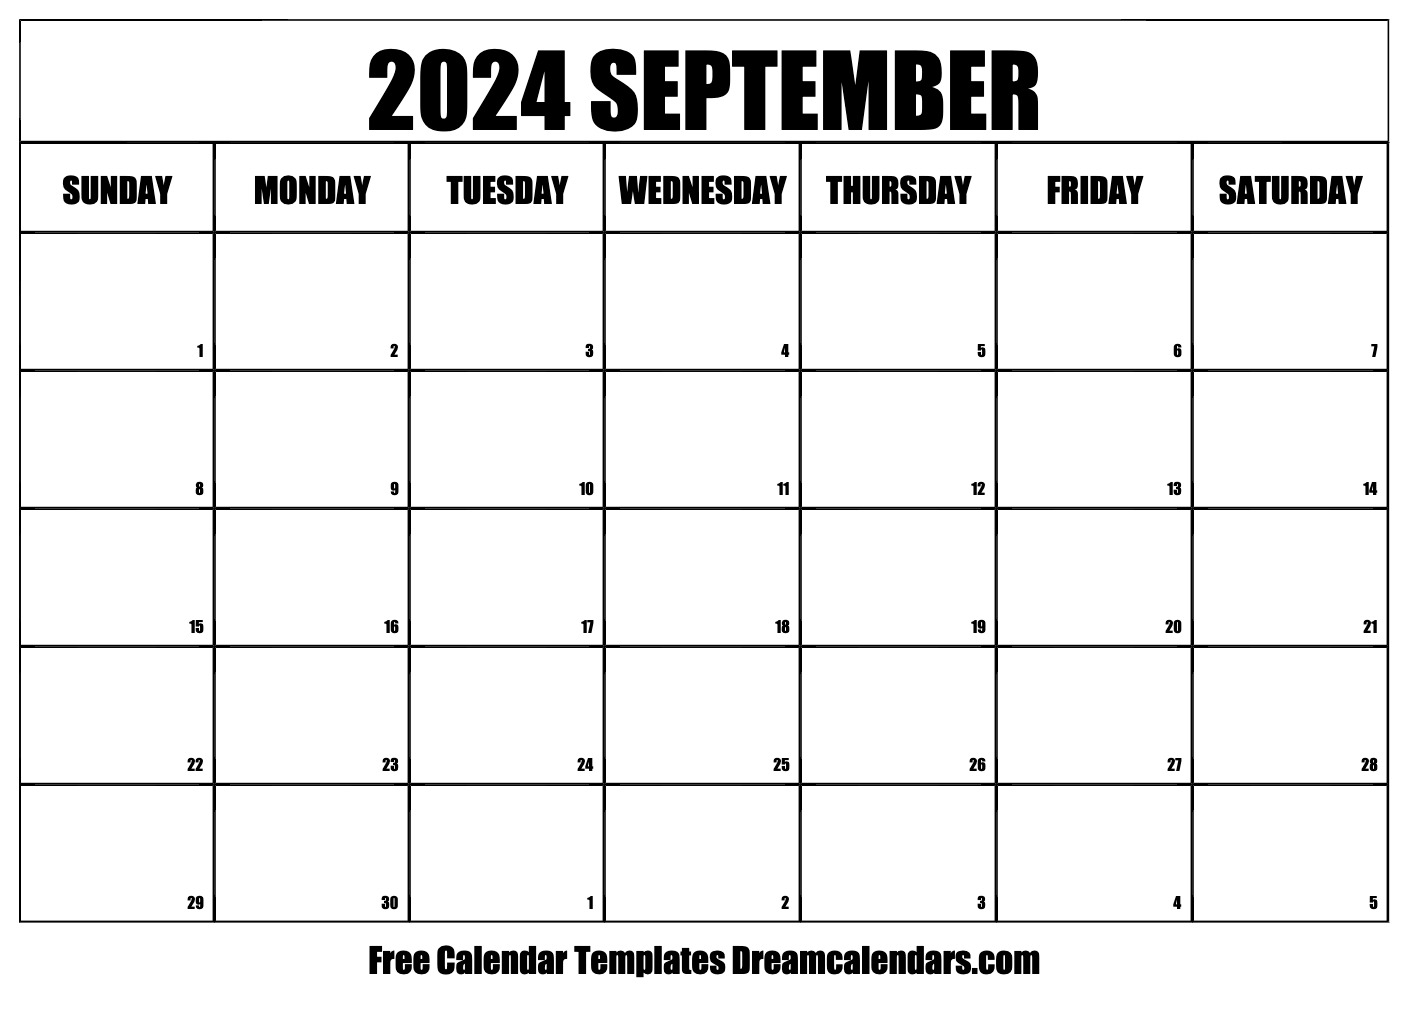 September 2024 Calendar Free Printable Bank2home com